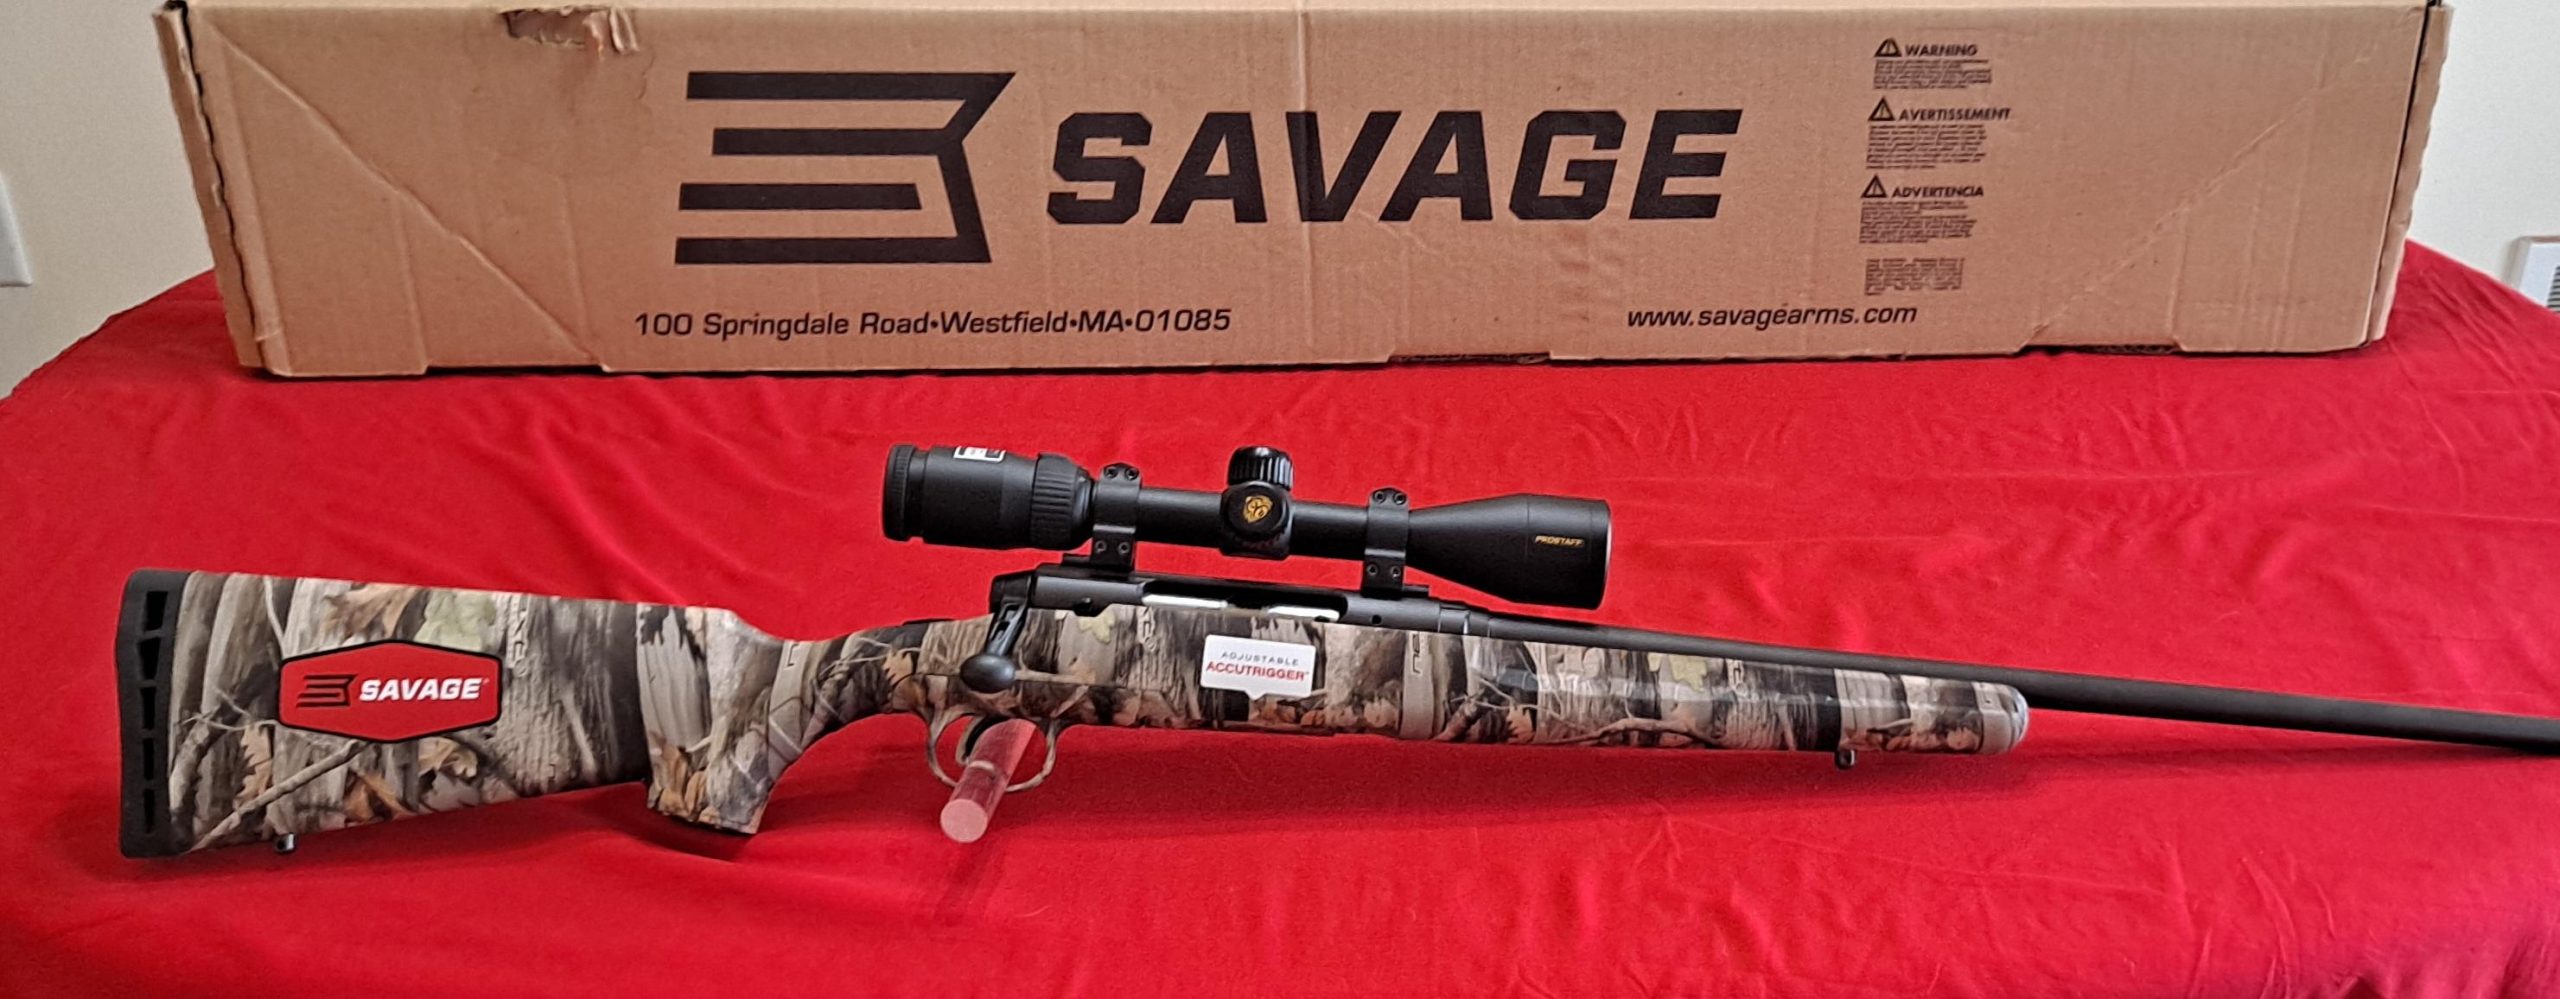 Savage axis ii in 7mm-08 with nikon scope $445.oo obo